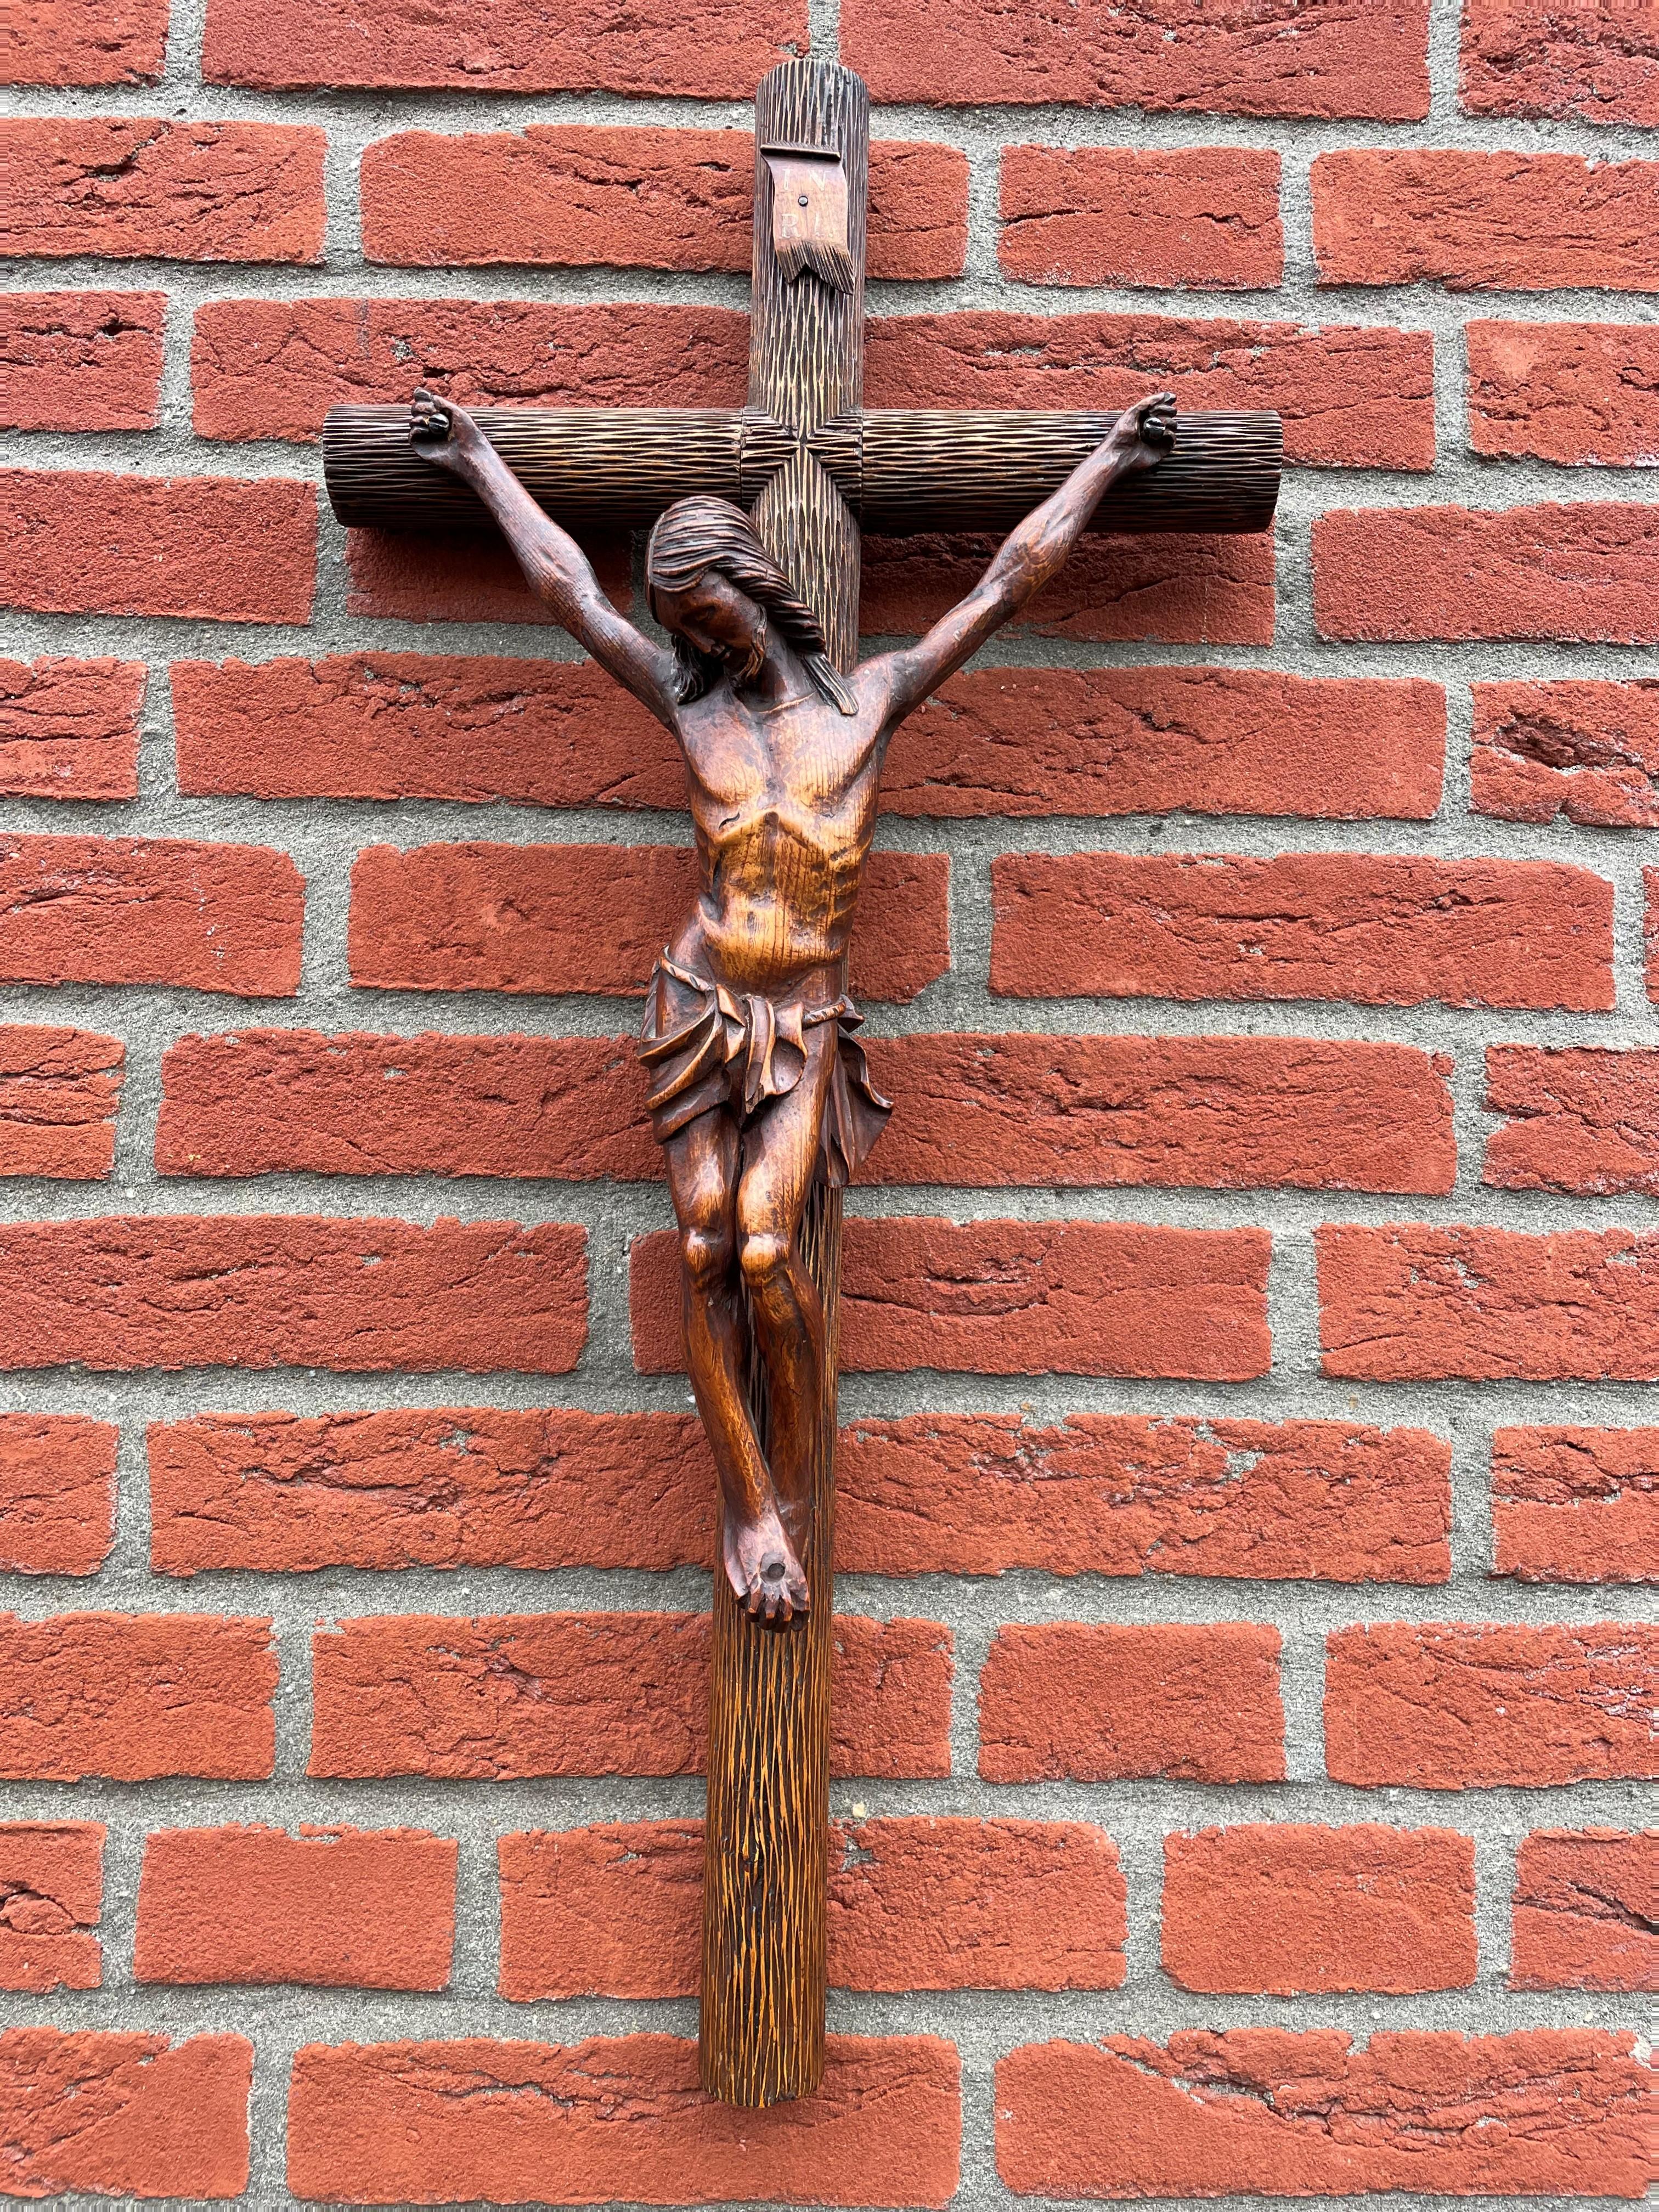 Einzigartiges und perfekt ausbalanciertes Kruzifix mit einem wunderbaren Kreuz und einem detaillierten Korpus von Jesus.

Dieses einzigartige Design-Kruzifix wird mit einem unglaublich detailliert und hochwertig geschnitzten, runden,